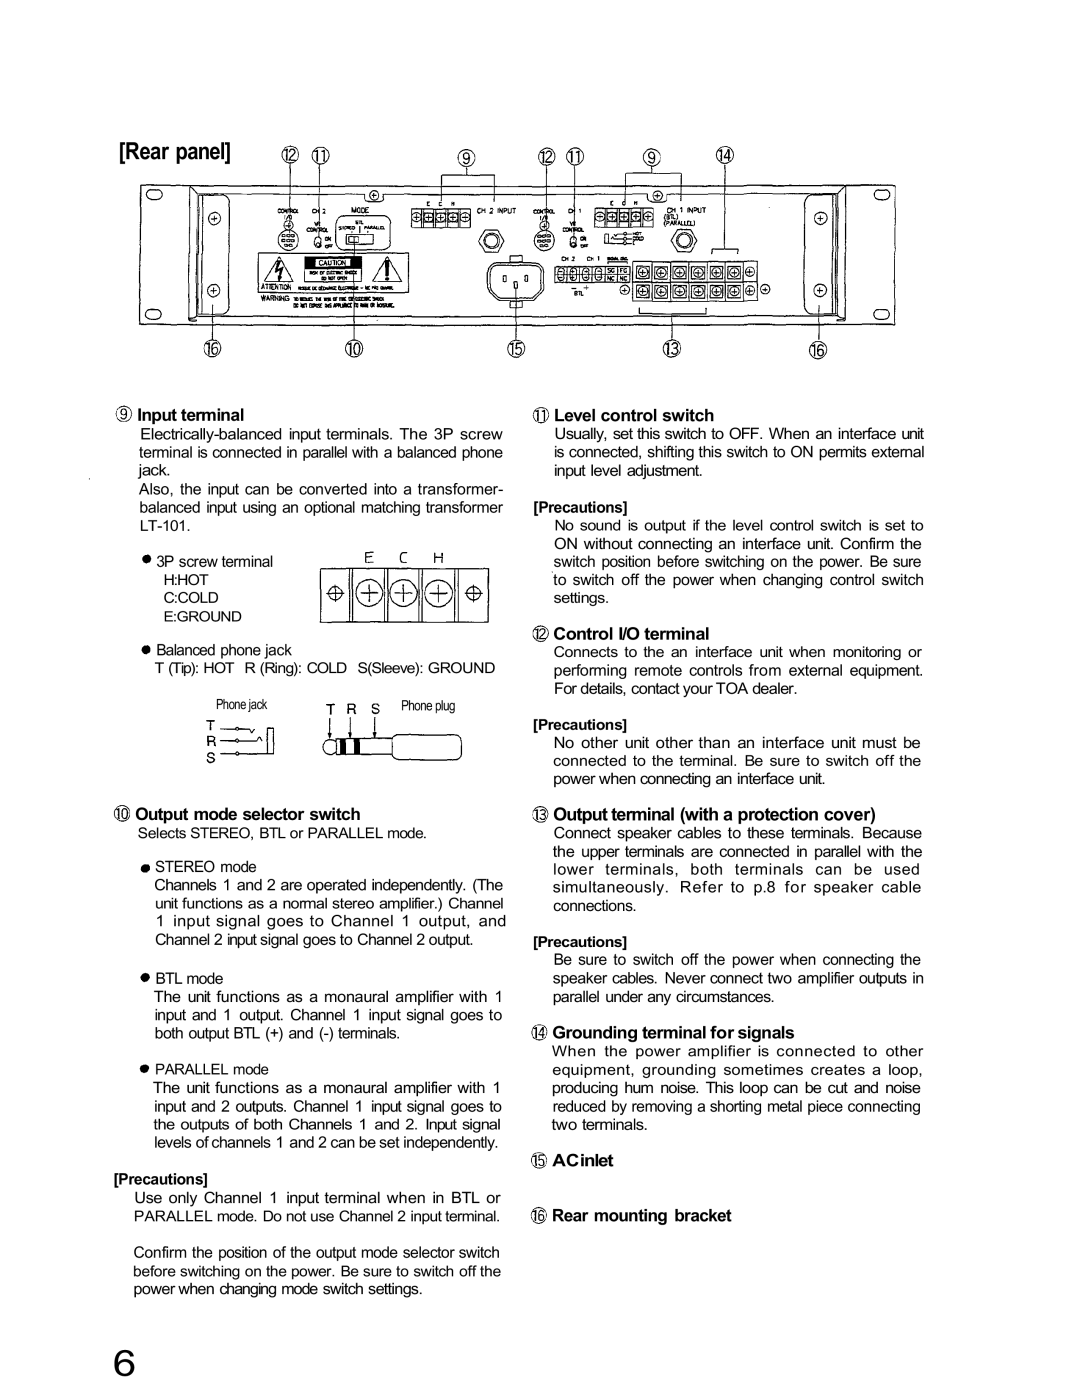 TOA Electronics IP-600D, IP-300D Input terminal, Level control switch, Control I/O terminal, Output mode selector switch 